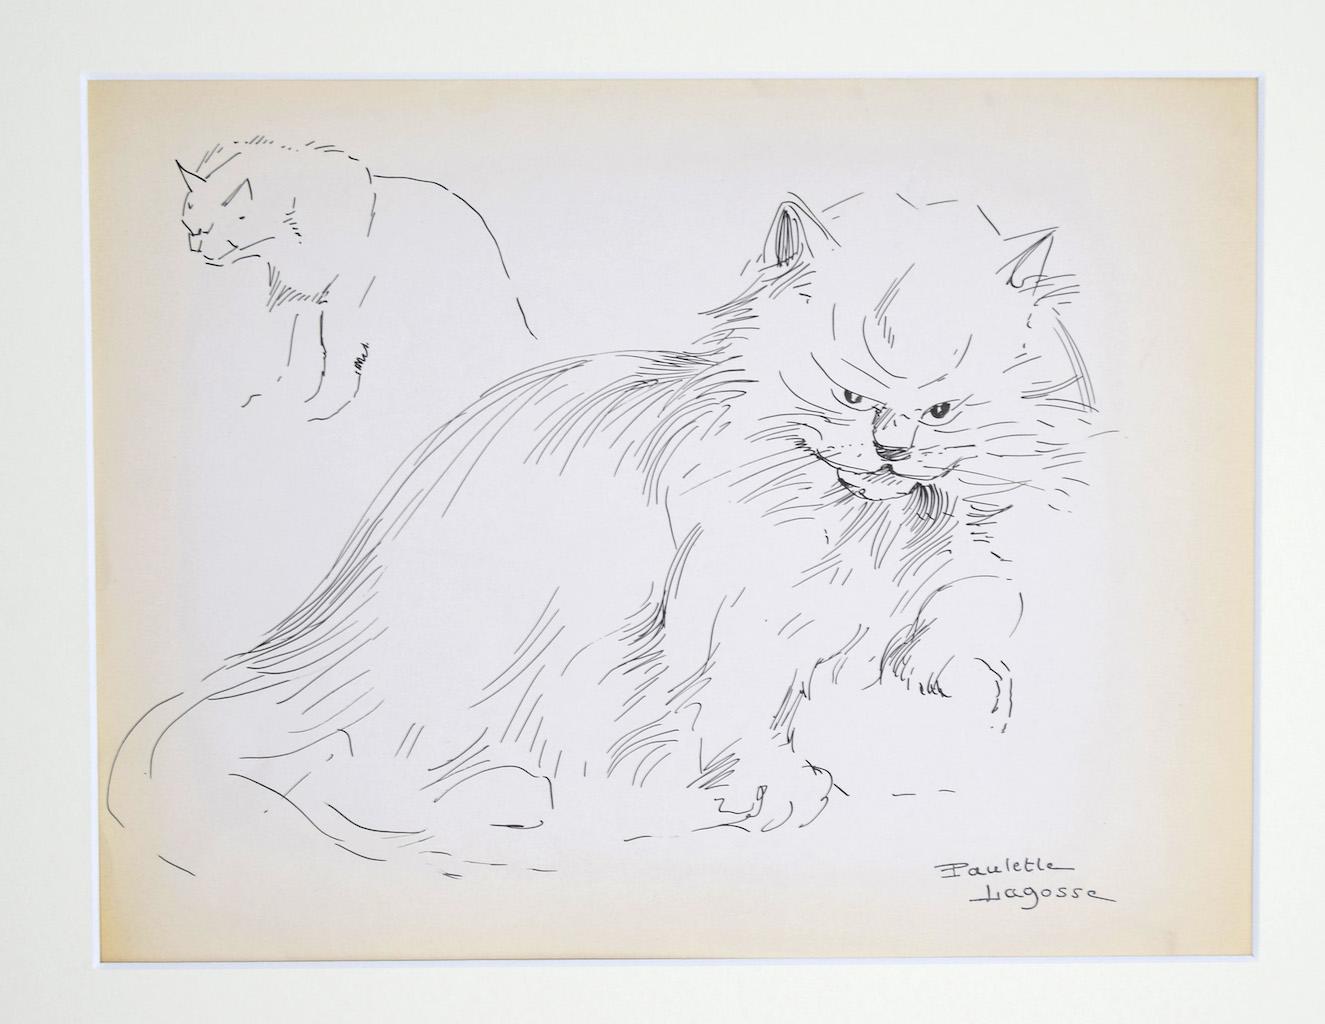 Marie Paulette Lagosse Animal Art - The Cat - Original Pen on Paper by M. P. Lagosse - 1970s